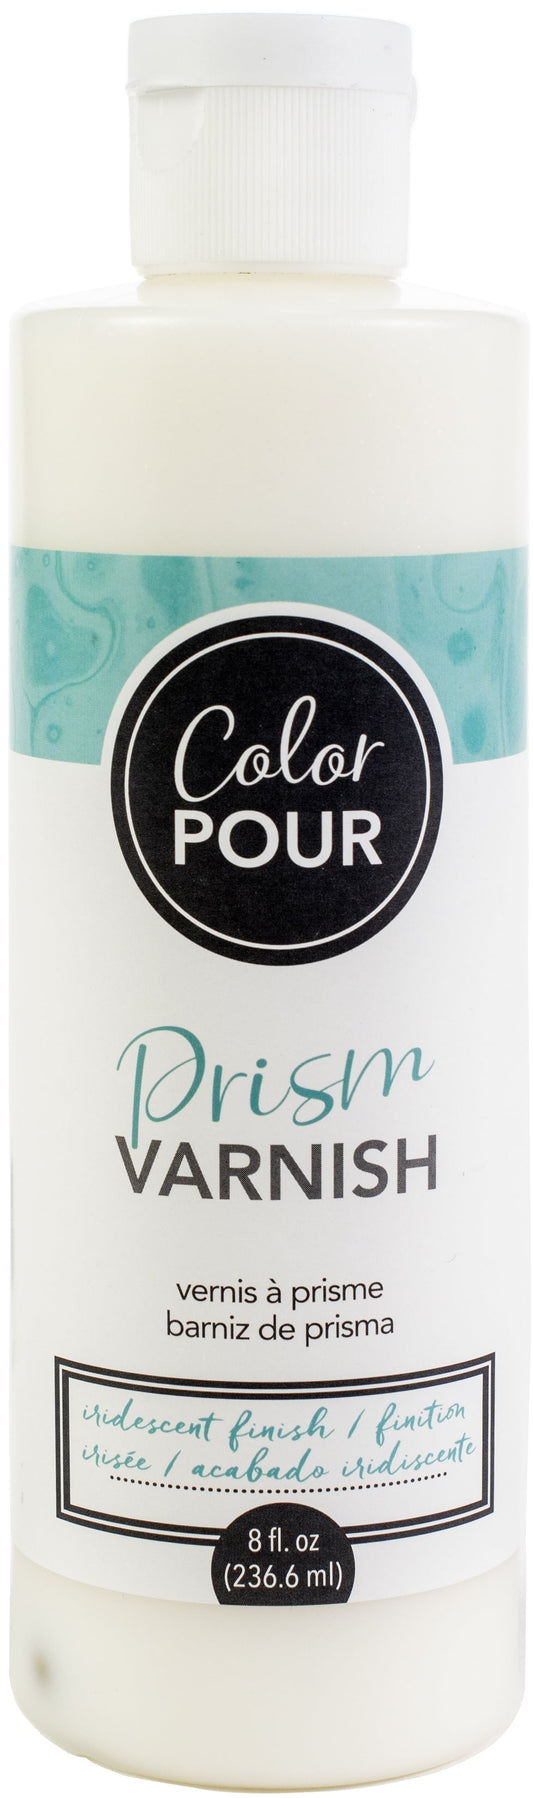 Color Pour Prism Varnish 8Oz-